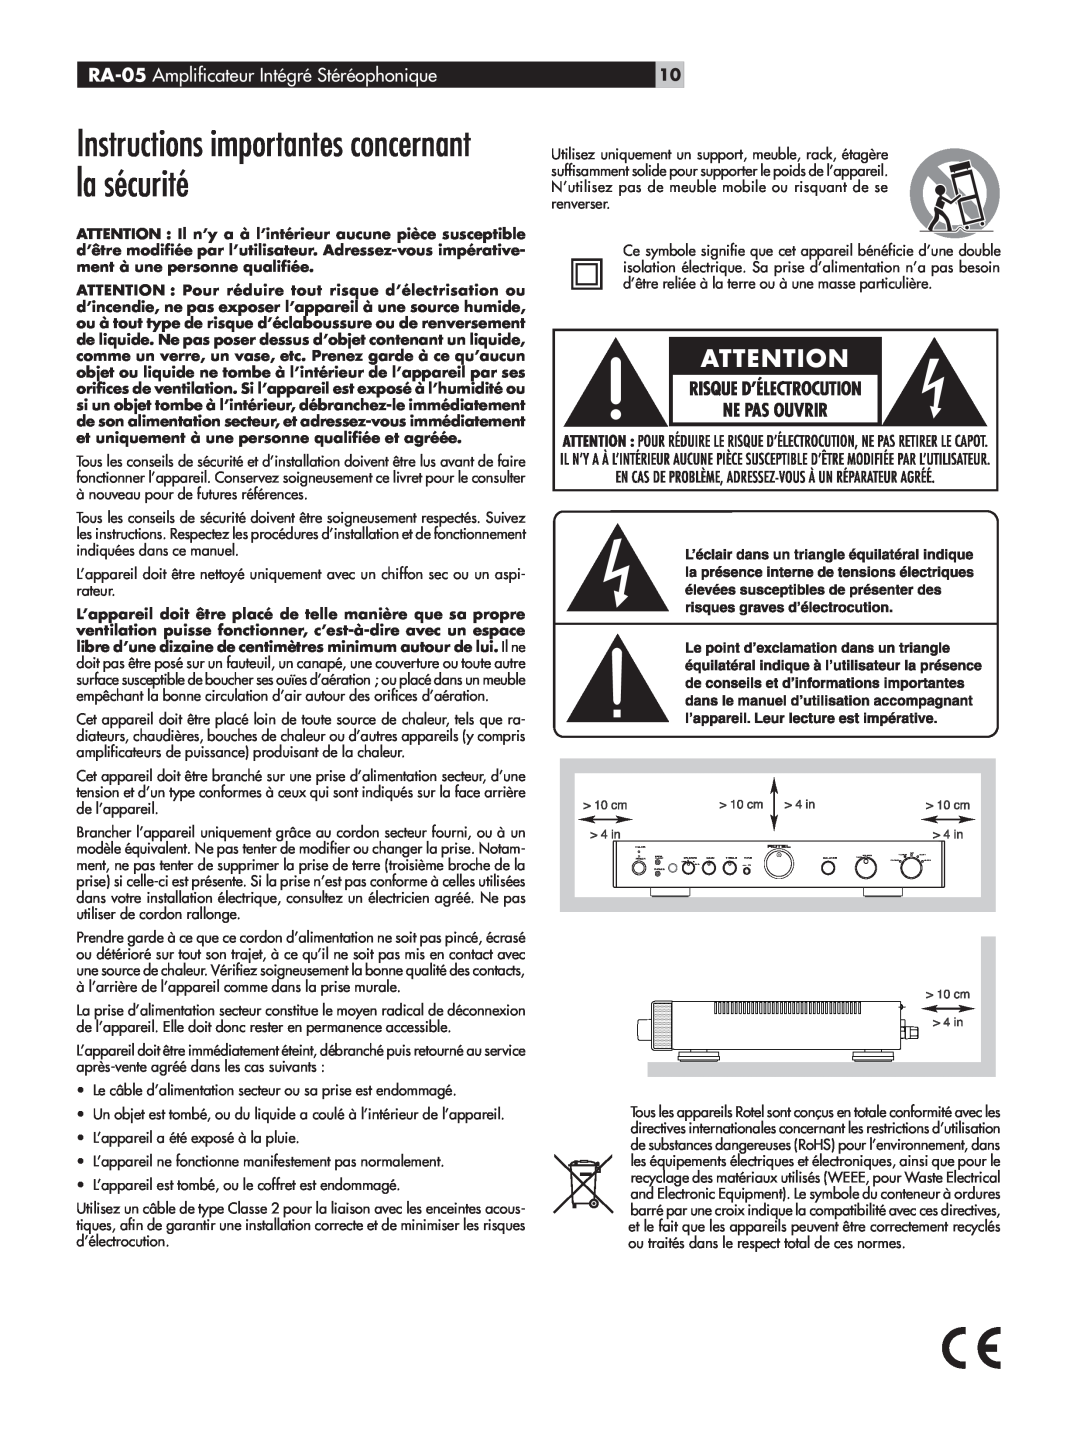 Rotel owner manual Instructions importantes concernant la sécurité, RA-05 Amplificateur Intégré Stéréophonique 